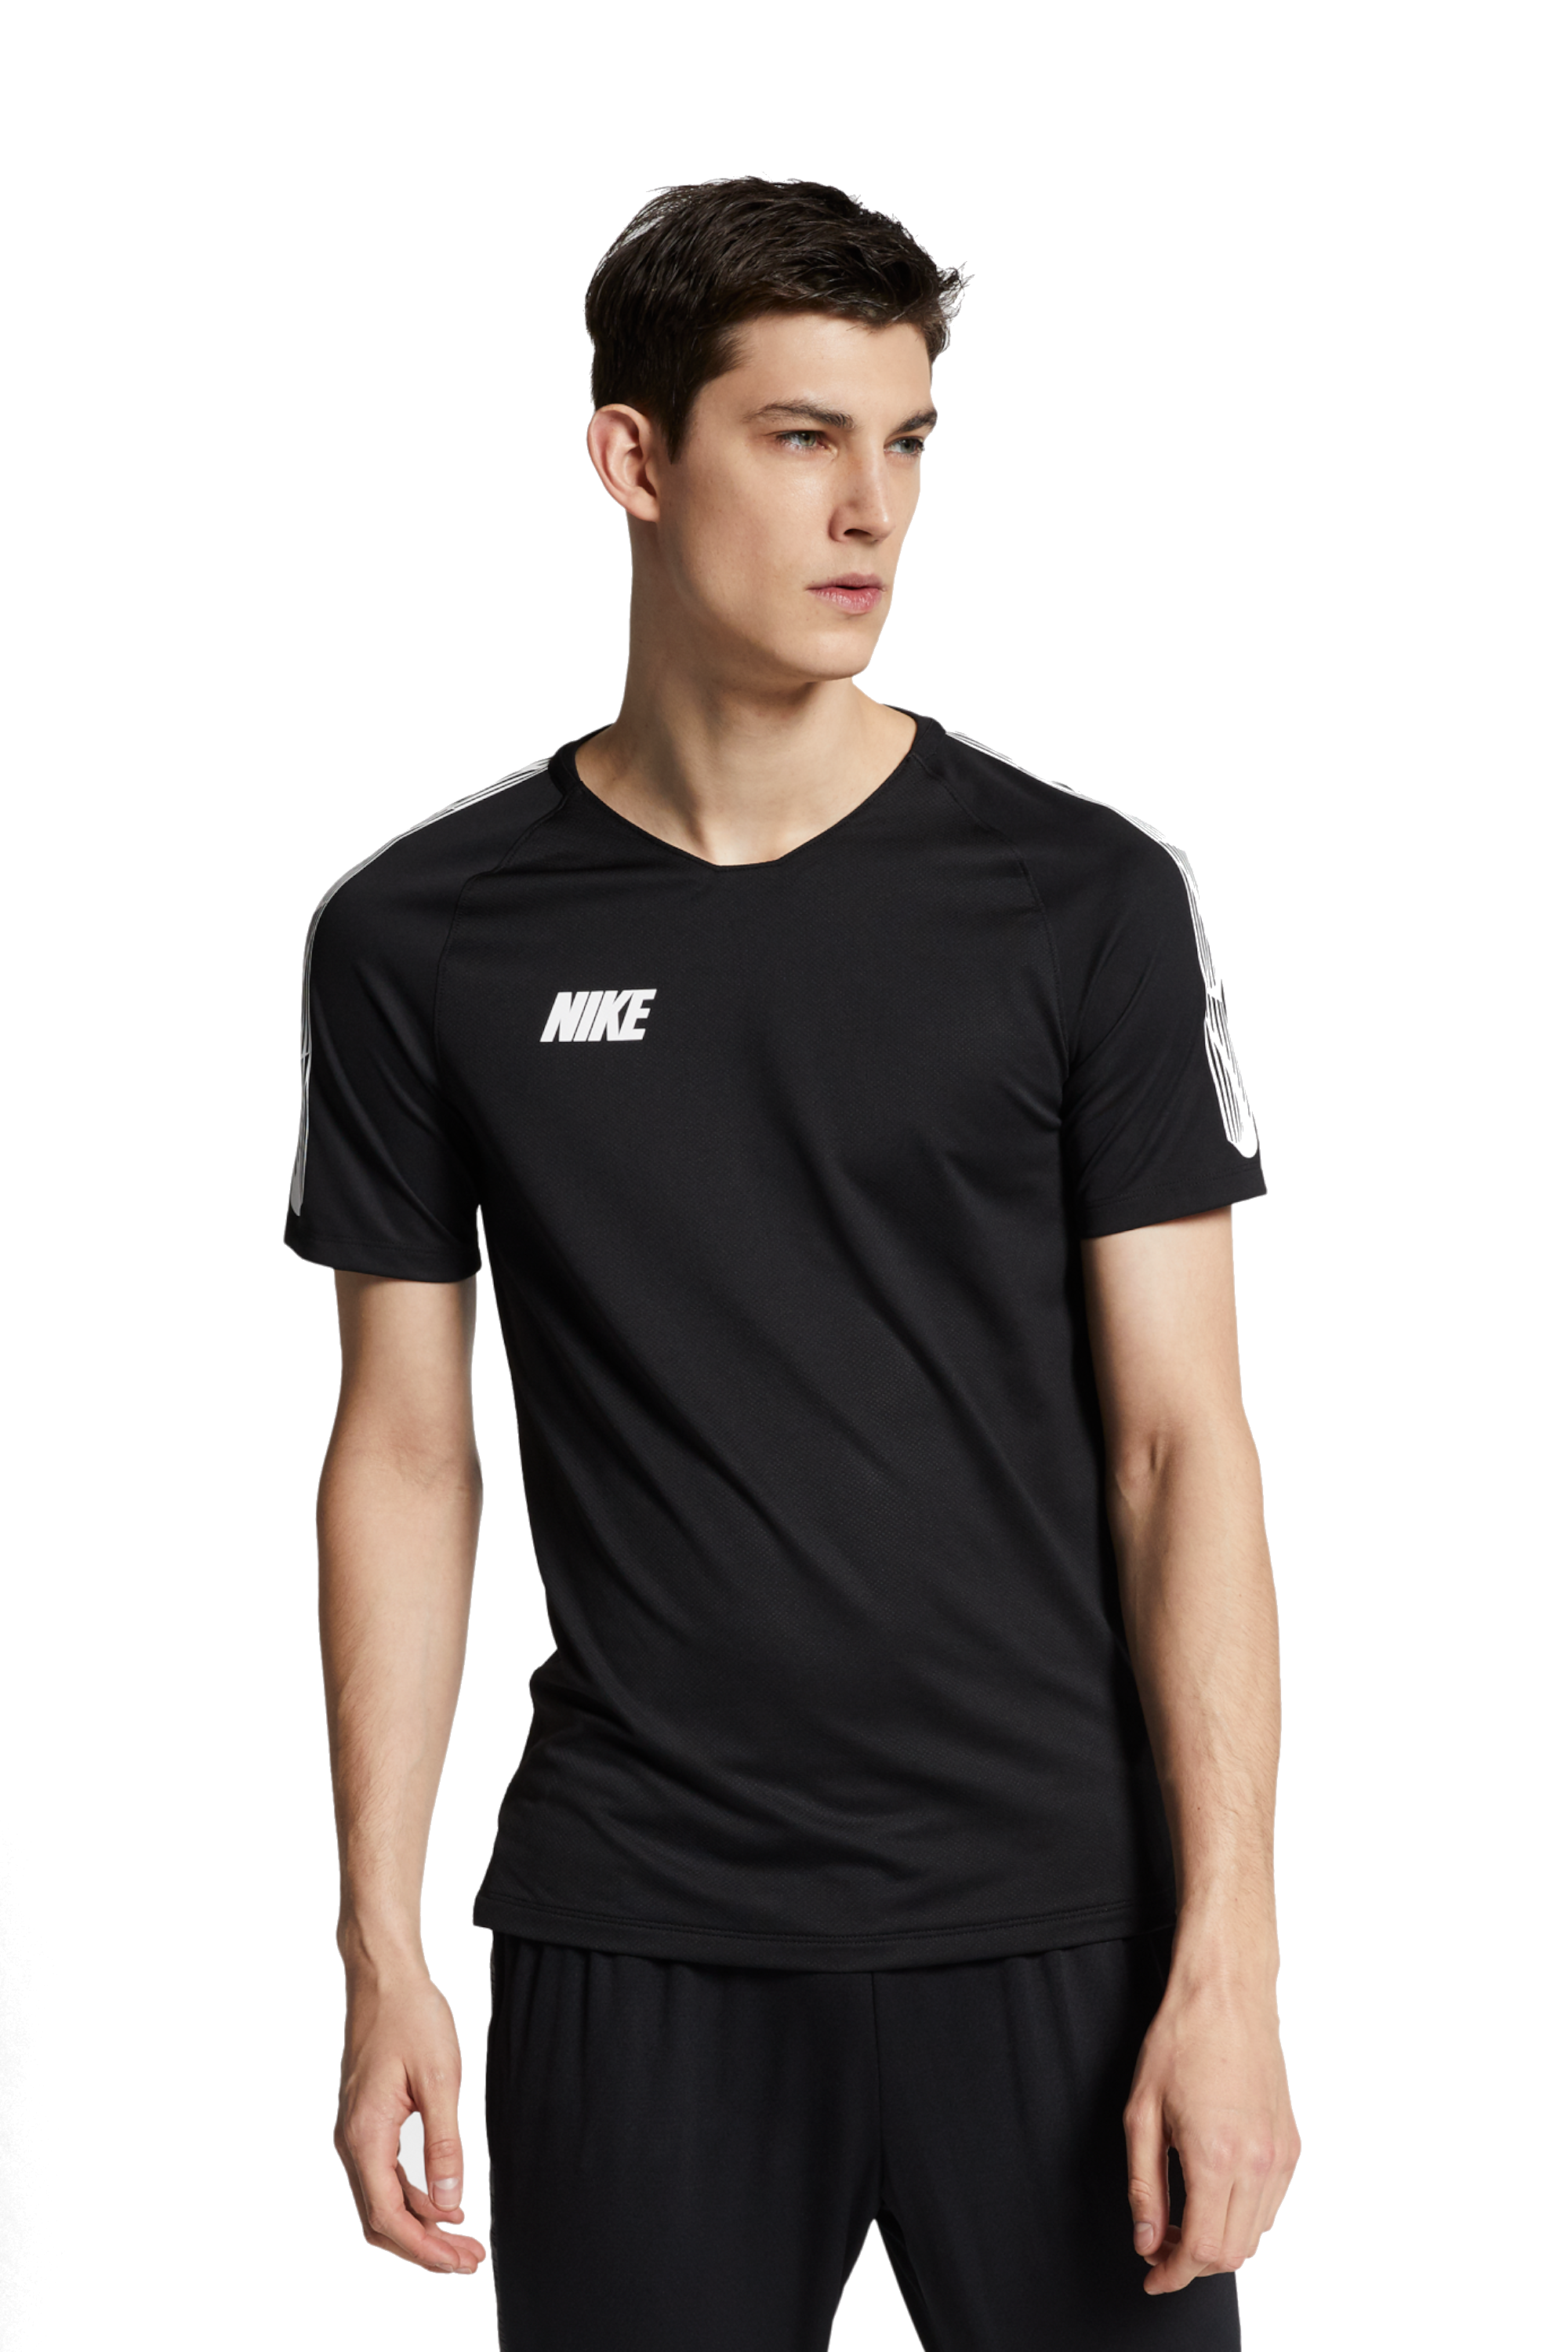 Mm Mitones embrague T-Shirt Nike Breathe Squad Top 19 | R-GOL.com - Football boots & equipment